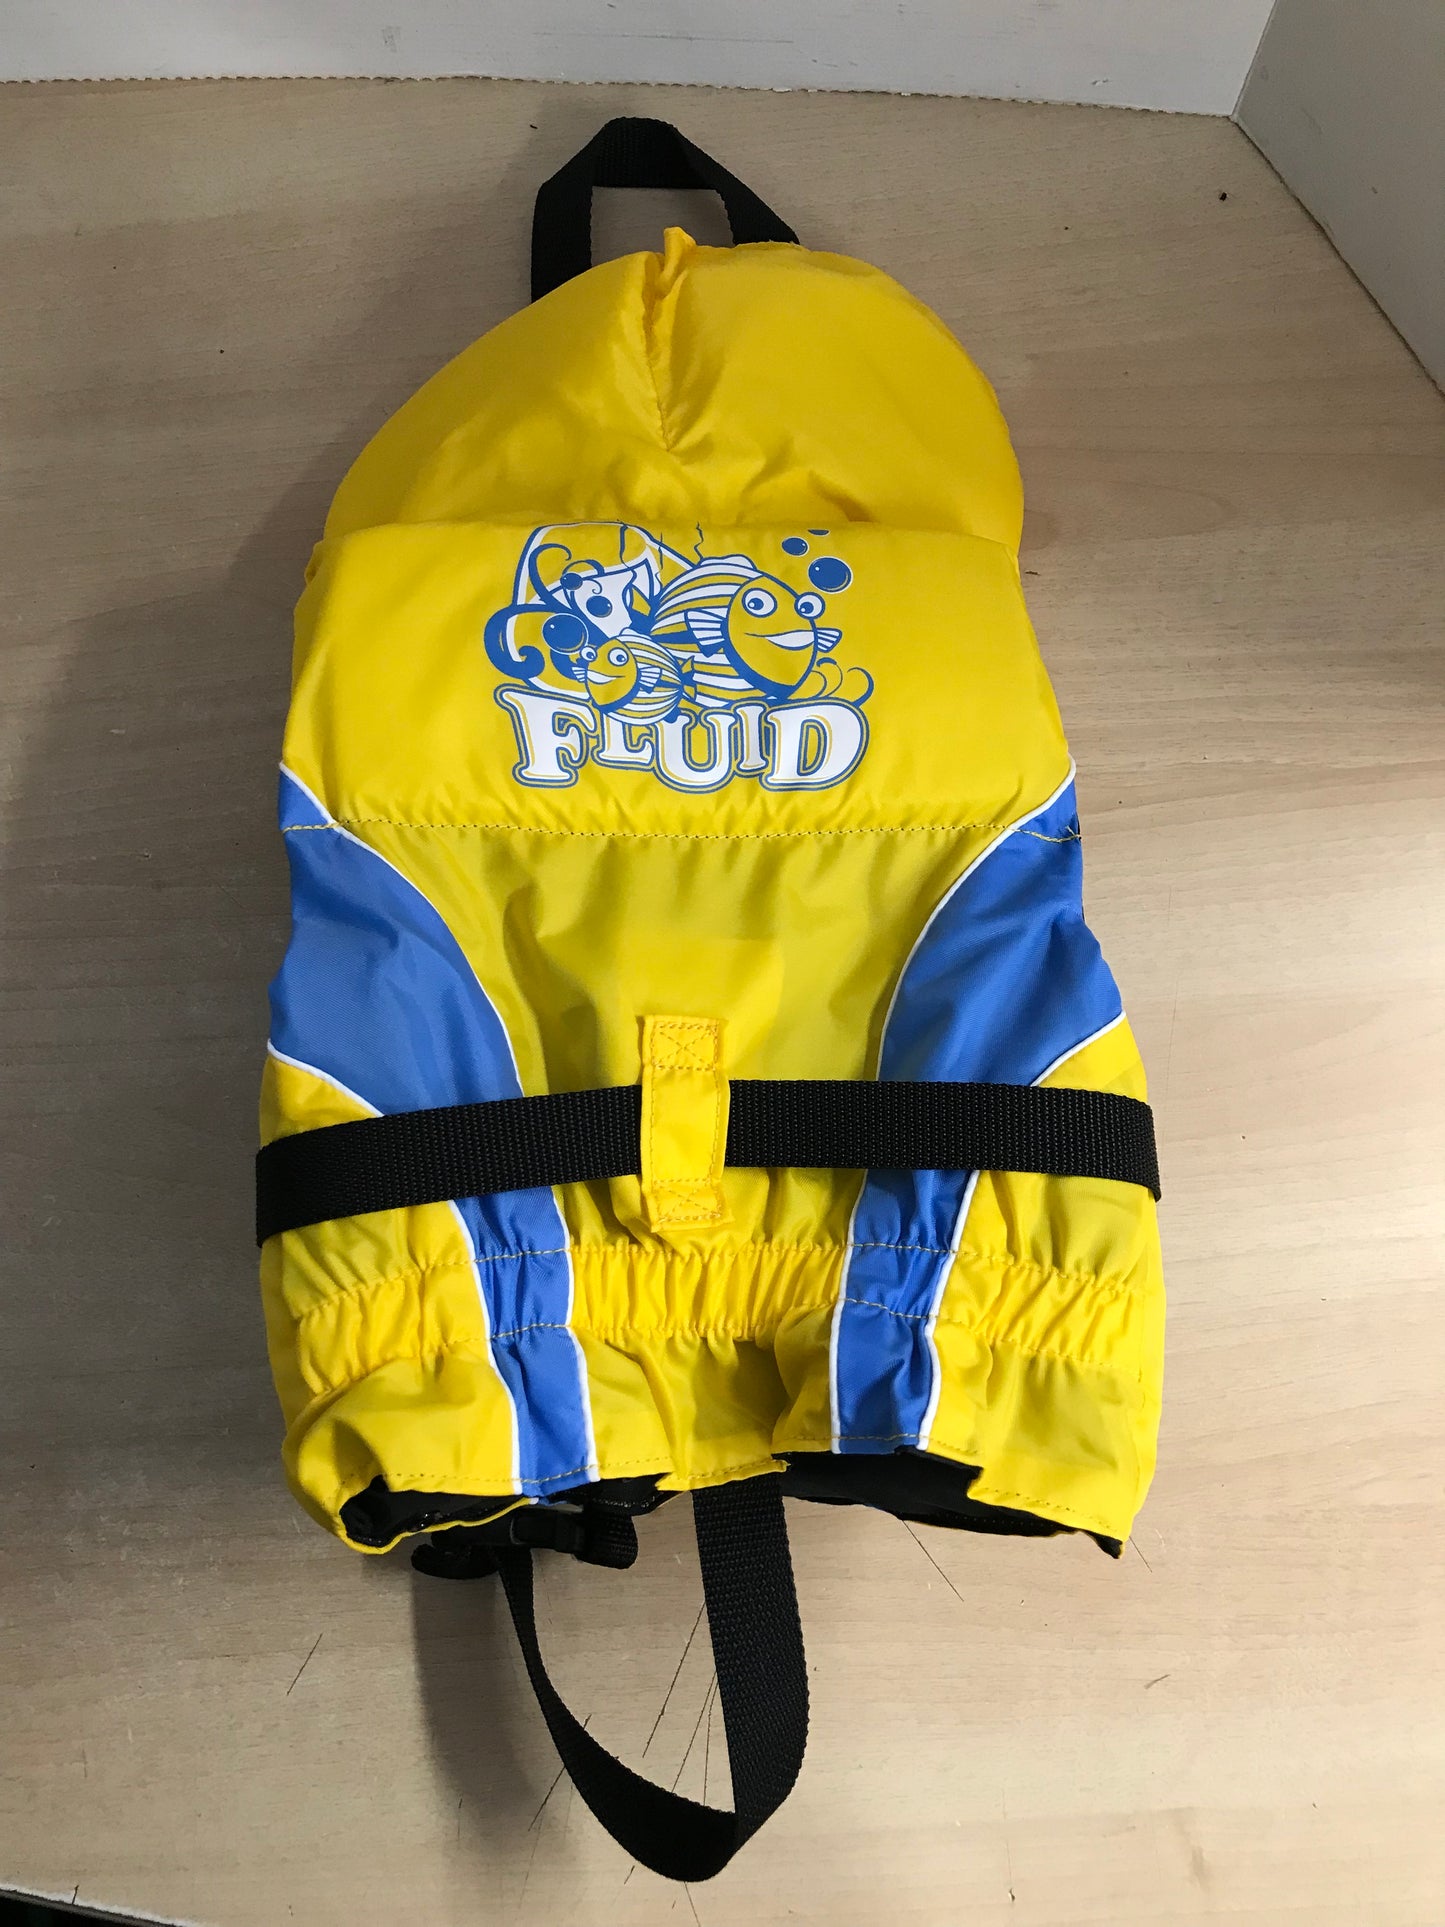 Life Jacket Child Size 20-30 lb Infant Fluid Yellow Black Blue Excellent